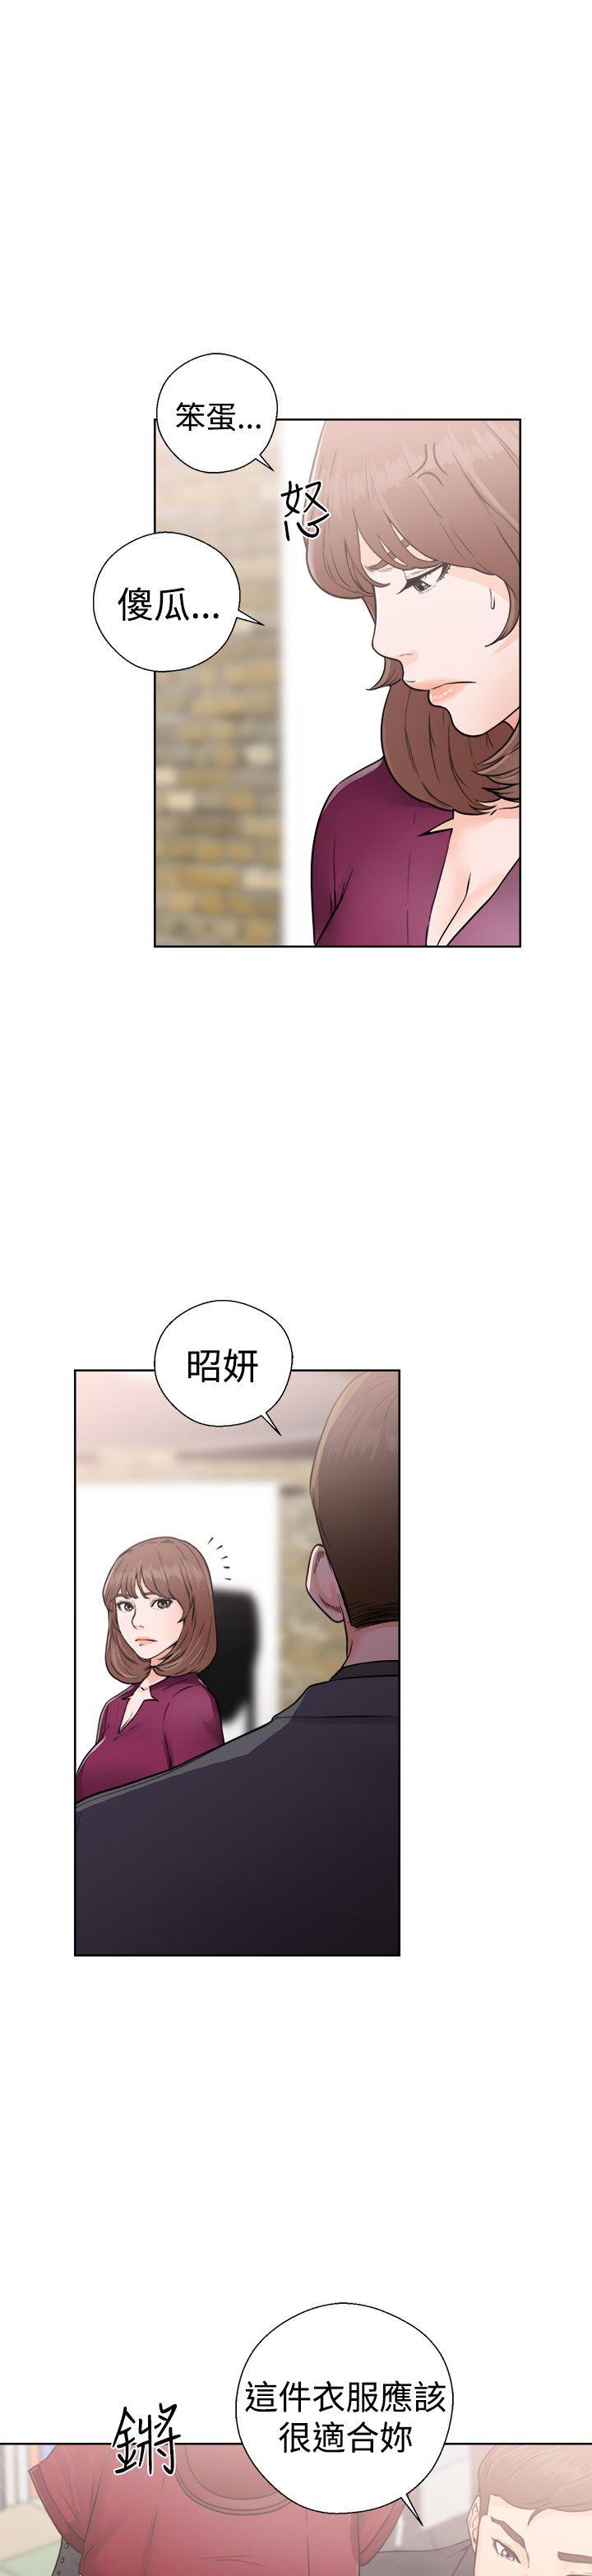 韩国污漫画 解禁:初始的快感 第29话 33